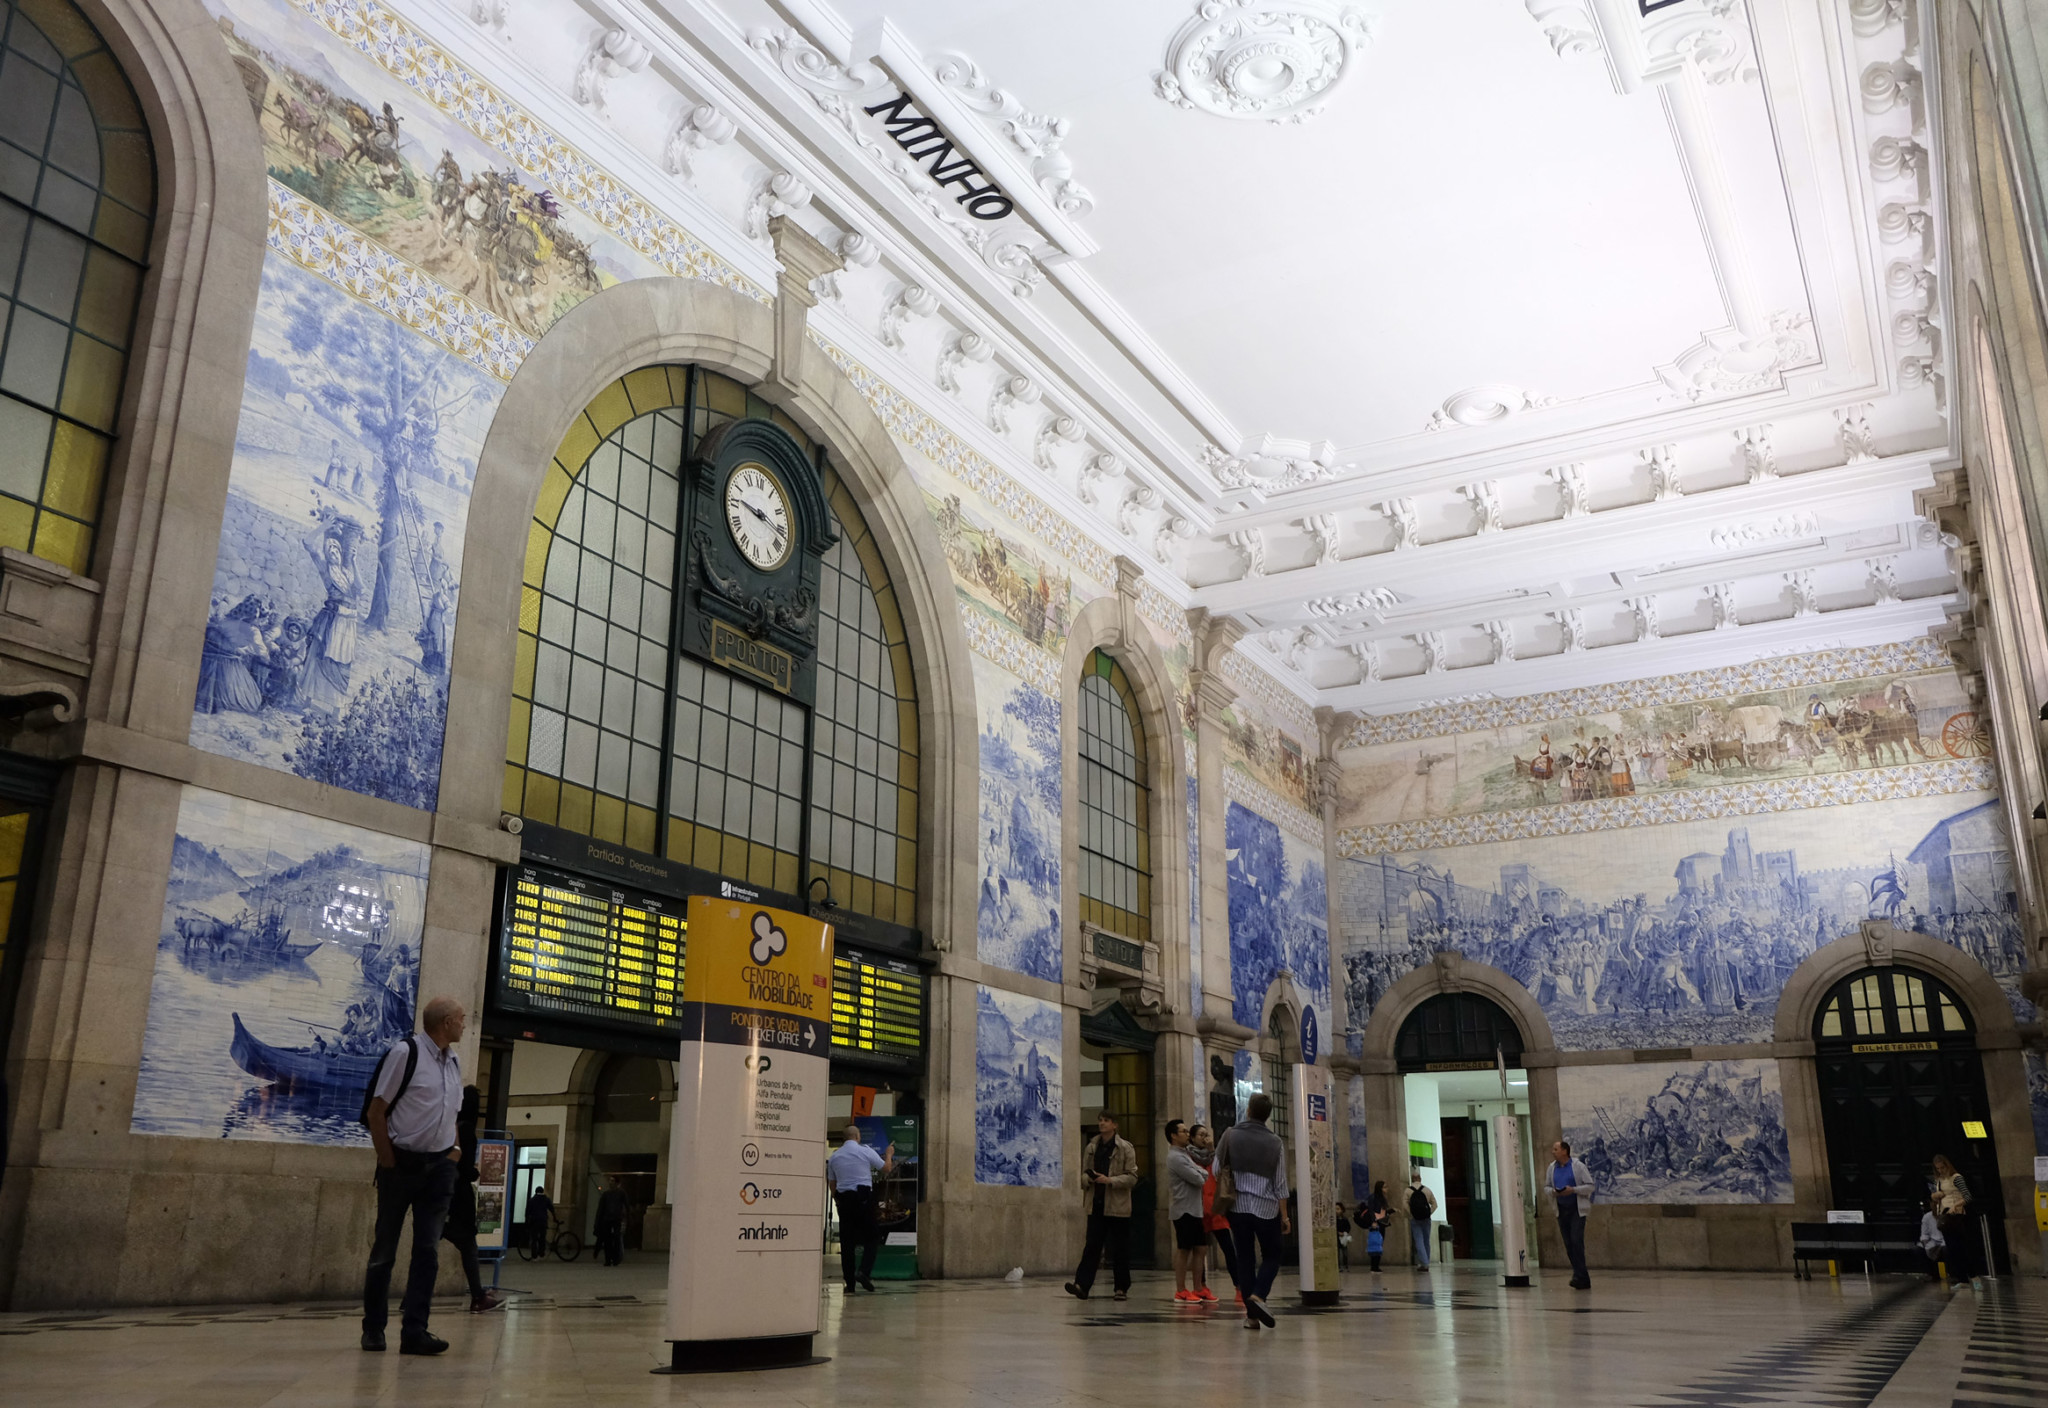 The gorgeous tilework at Porto São Bento station